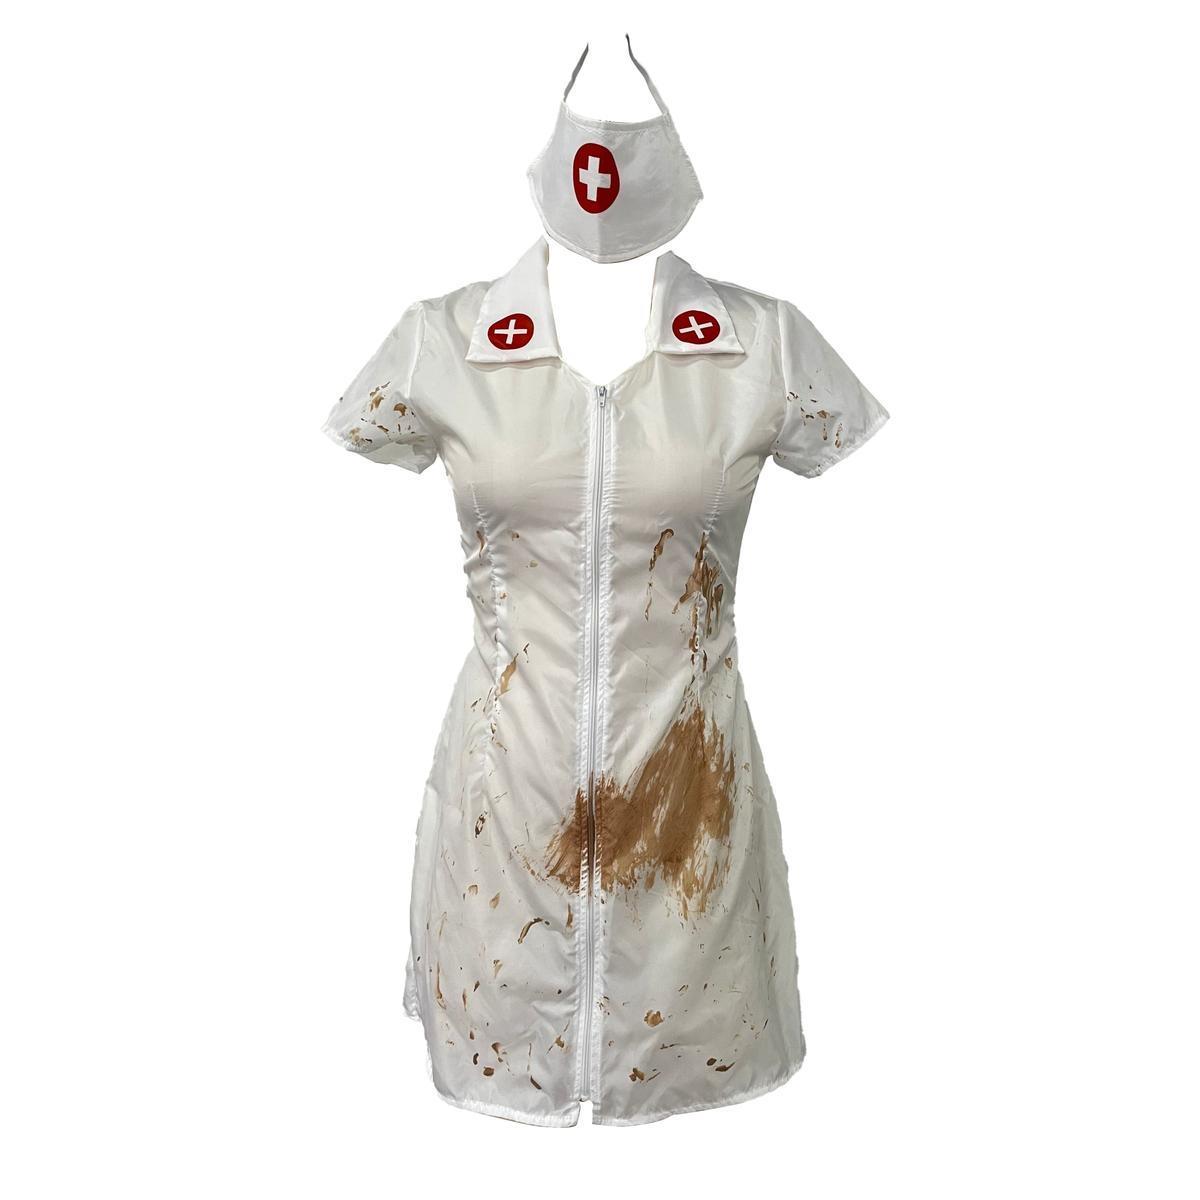 Costume d'infirmière sanglant - Taille adulte unique - C'PARTY